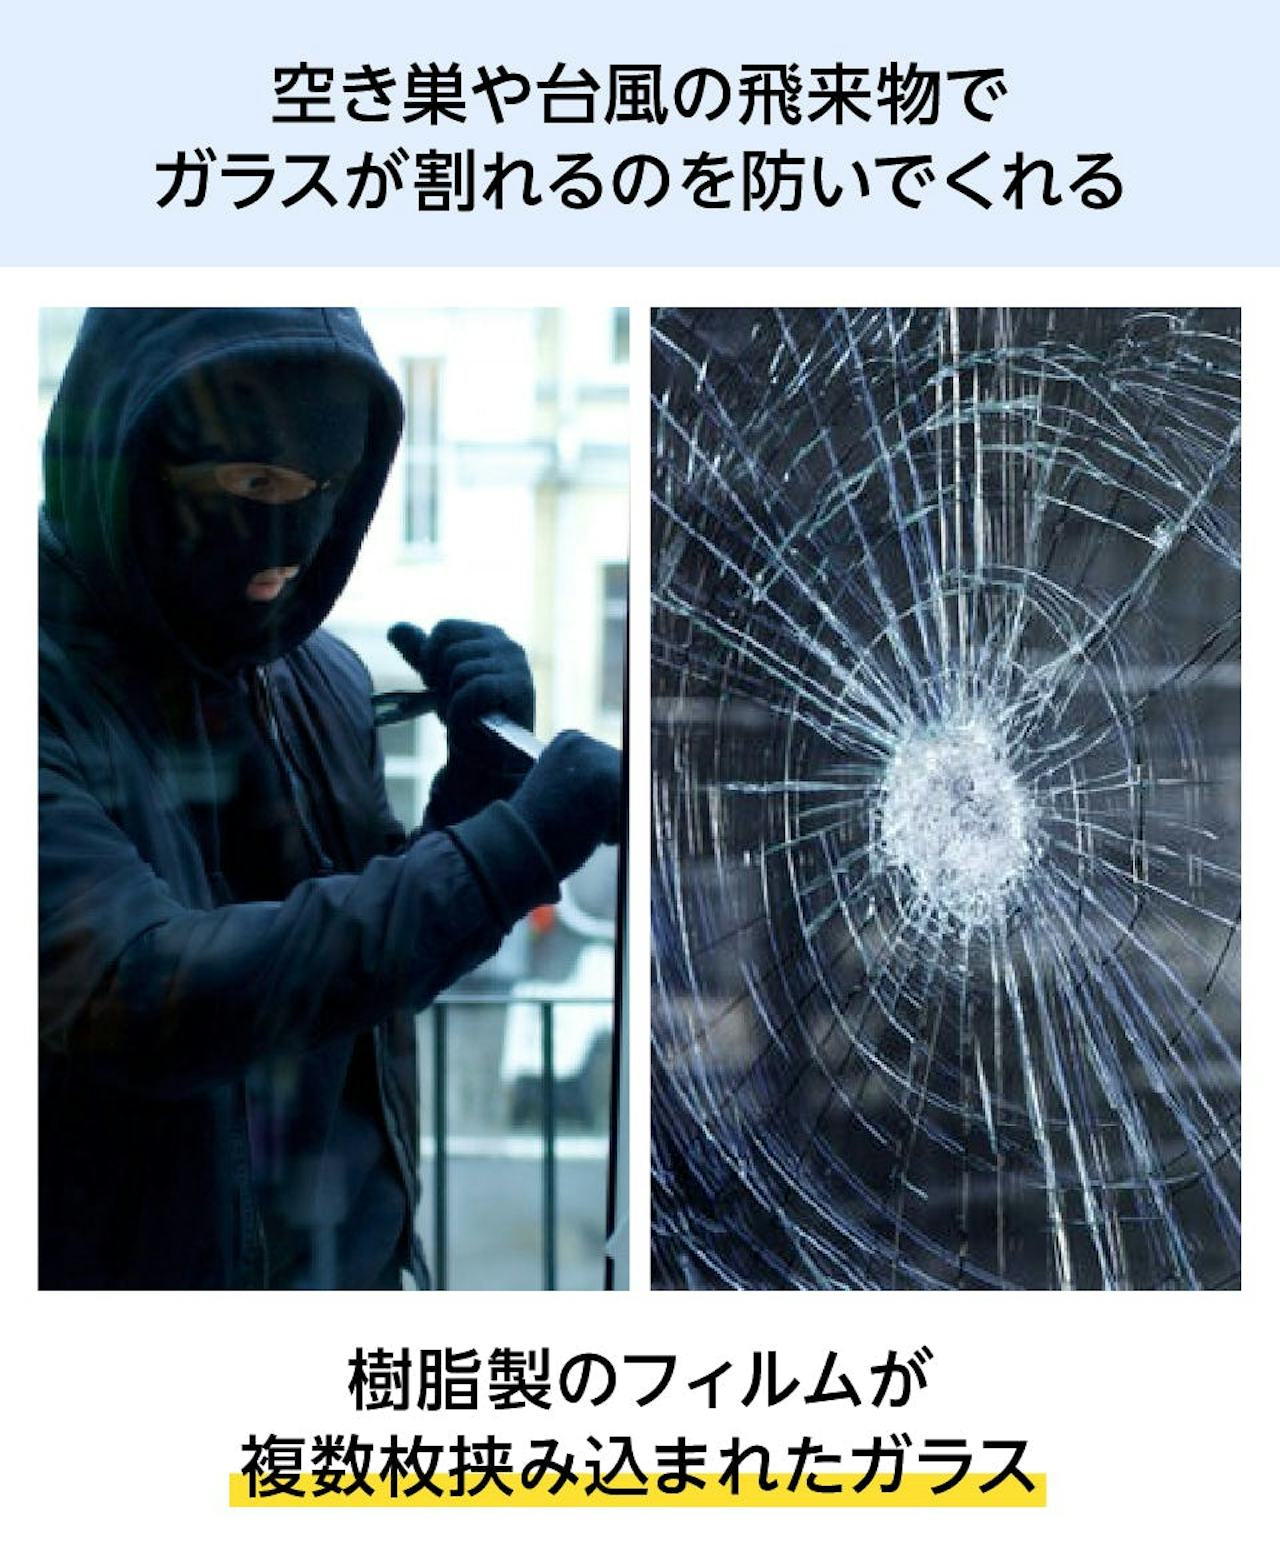 地震や台風に強い窓ガラス「防犯ガラス」は、フィルムによって割れるのを防ぐ